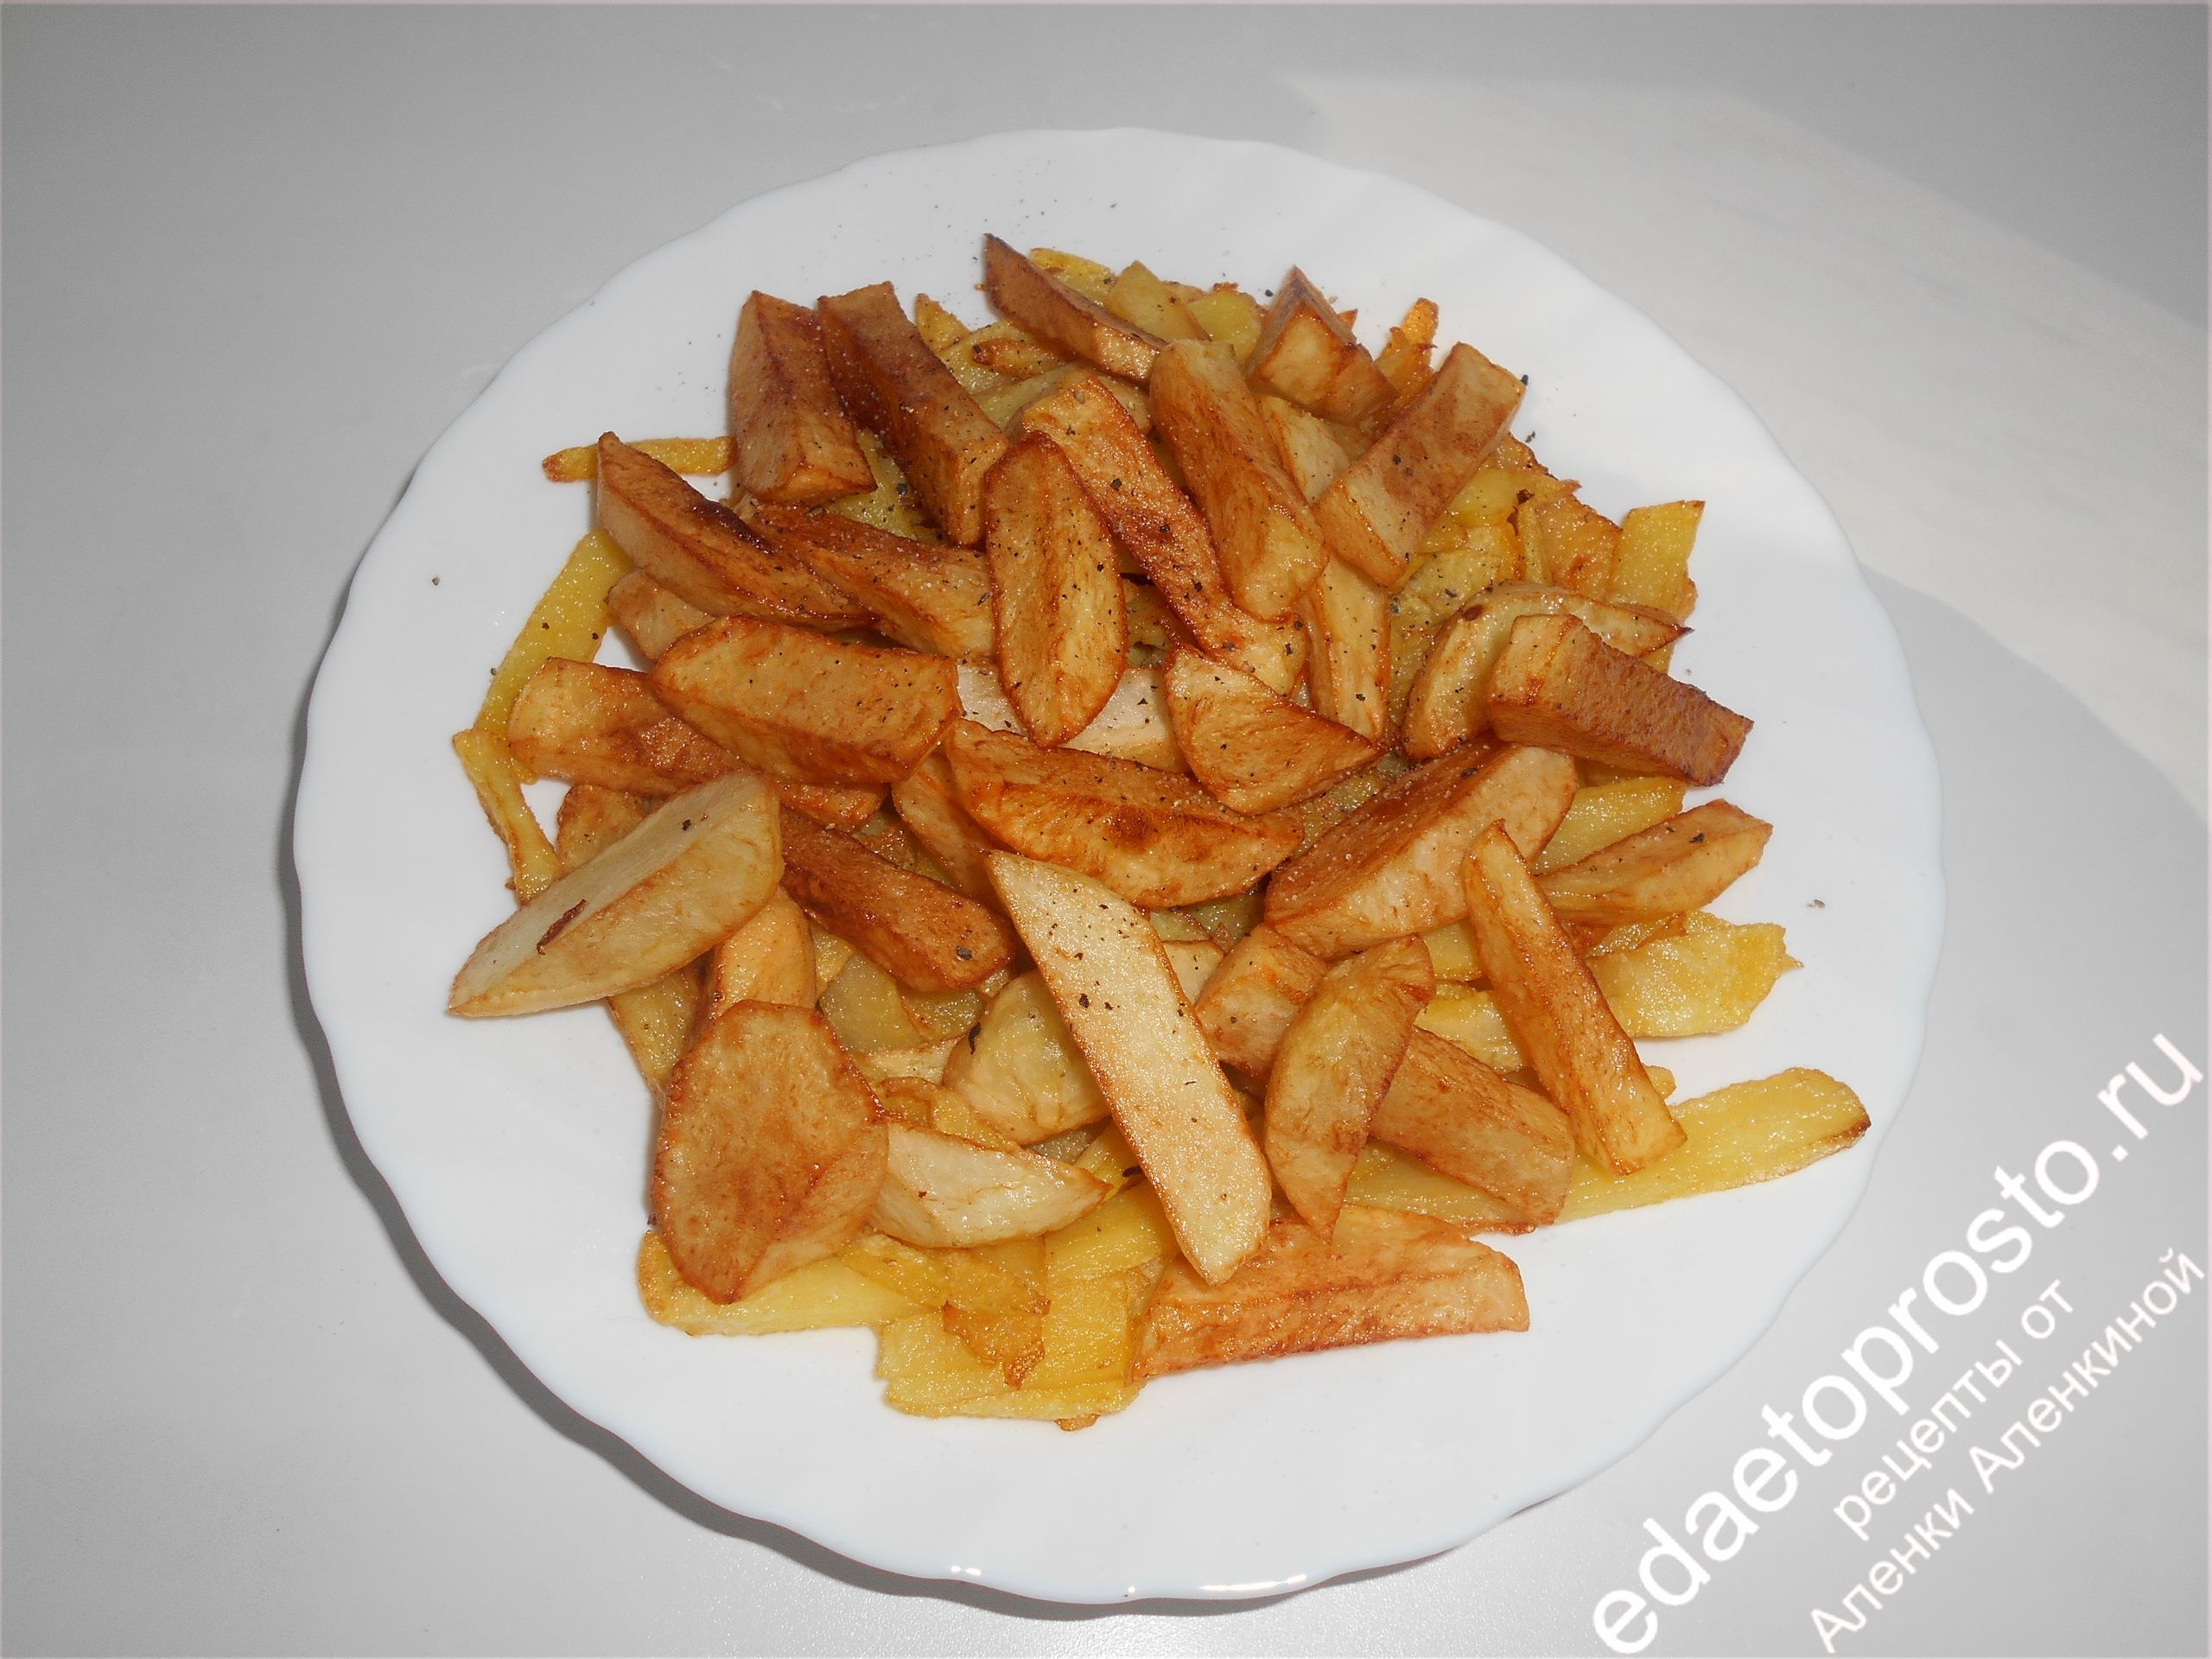 фото вкусного блюда из картофеля жареного в масле, красивое фото блюда из картофеля